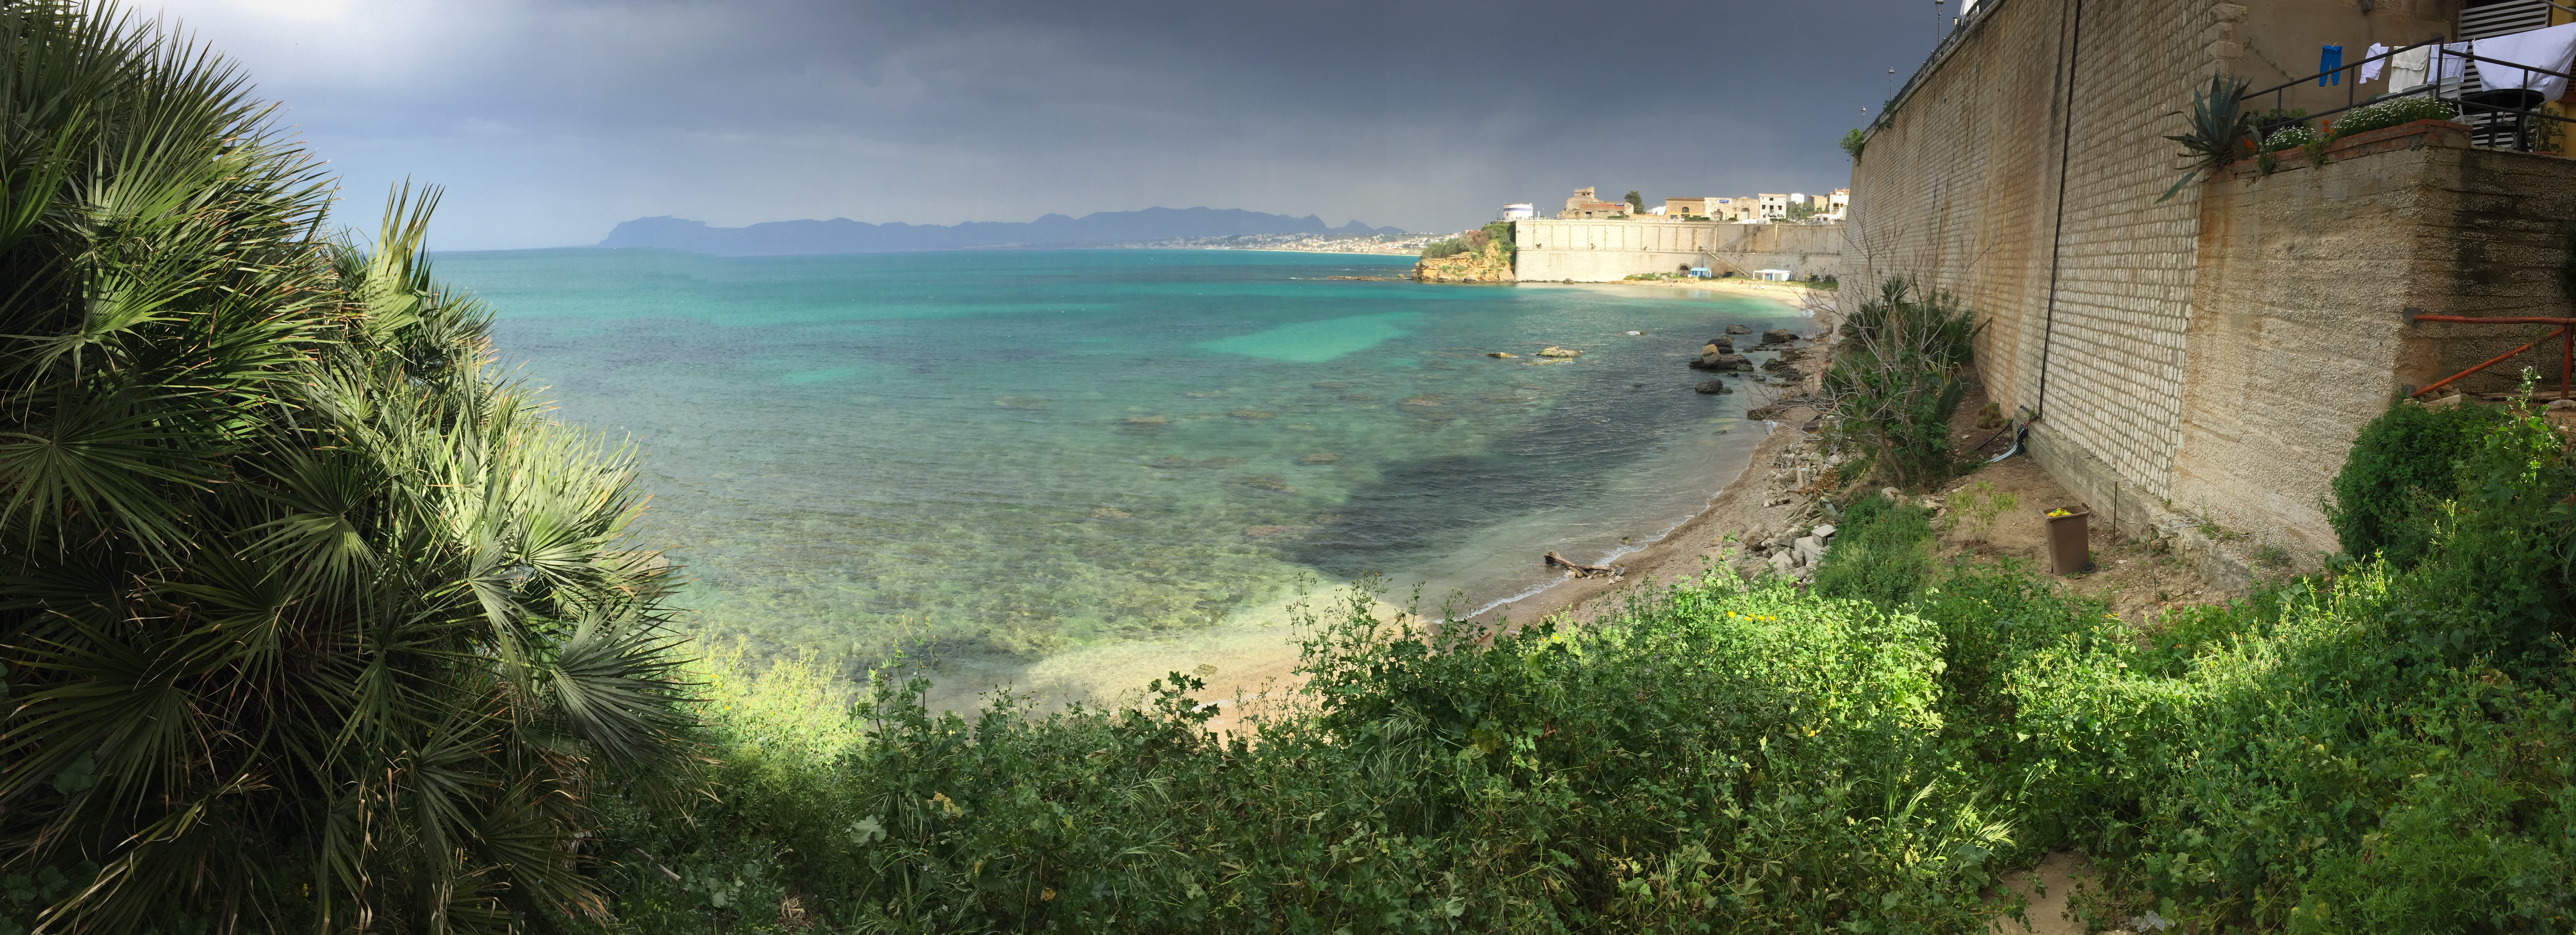 Castellamare del Golfo, Sicilia